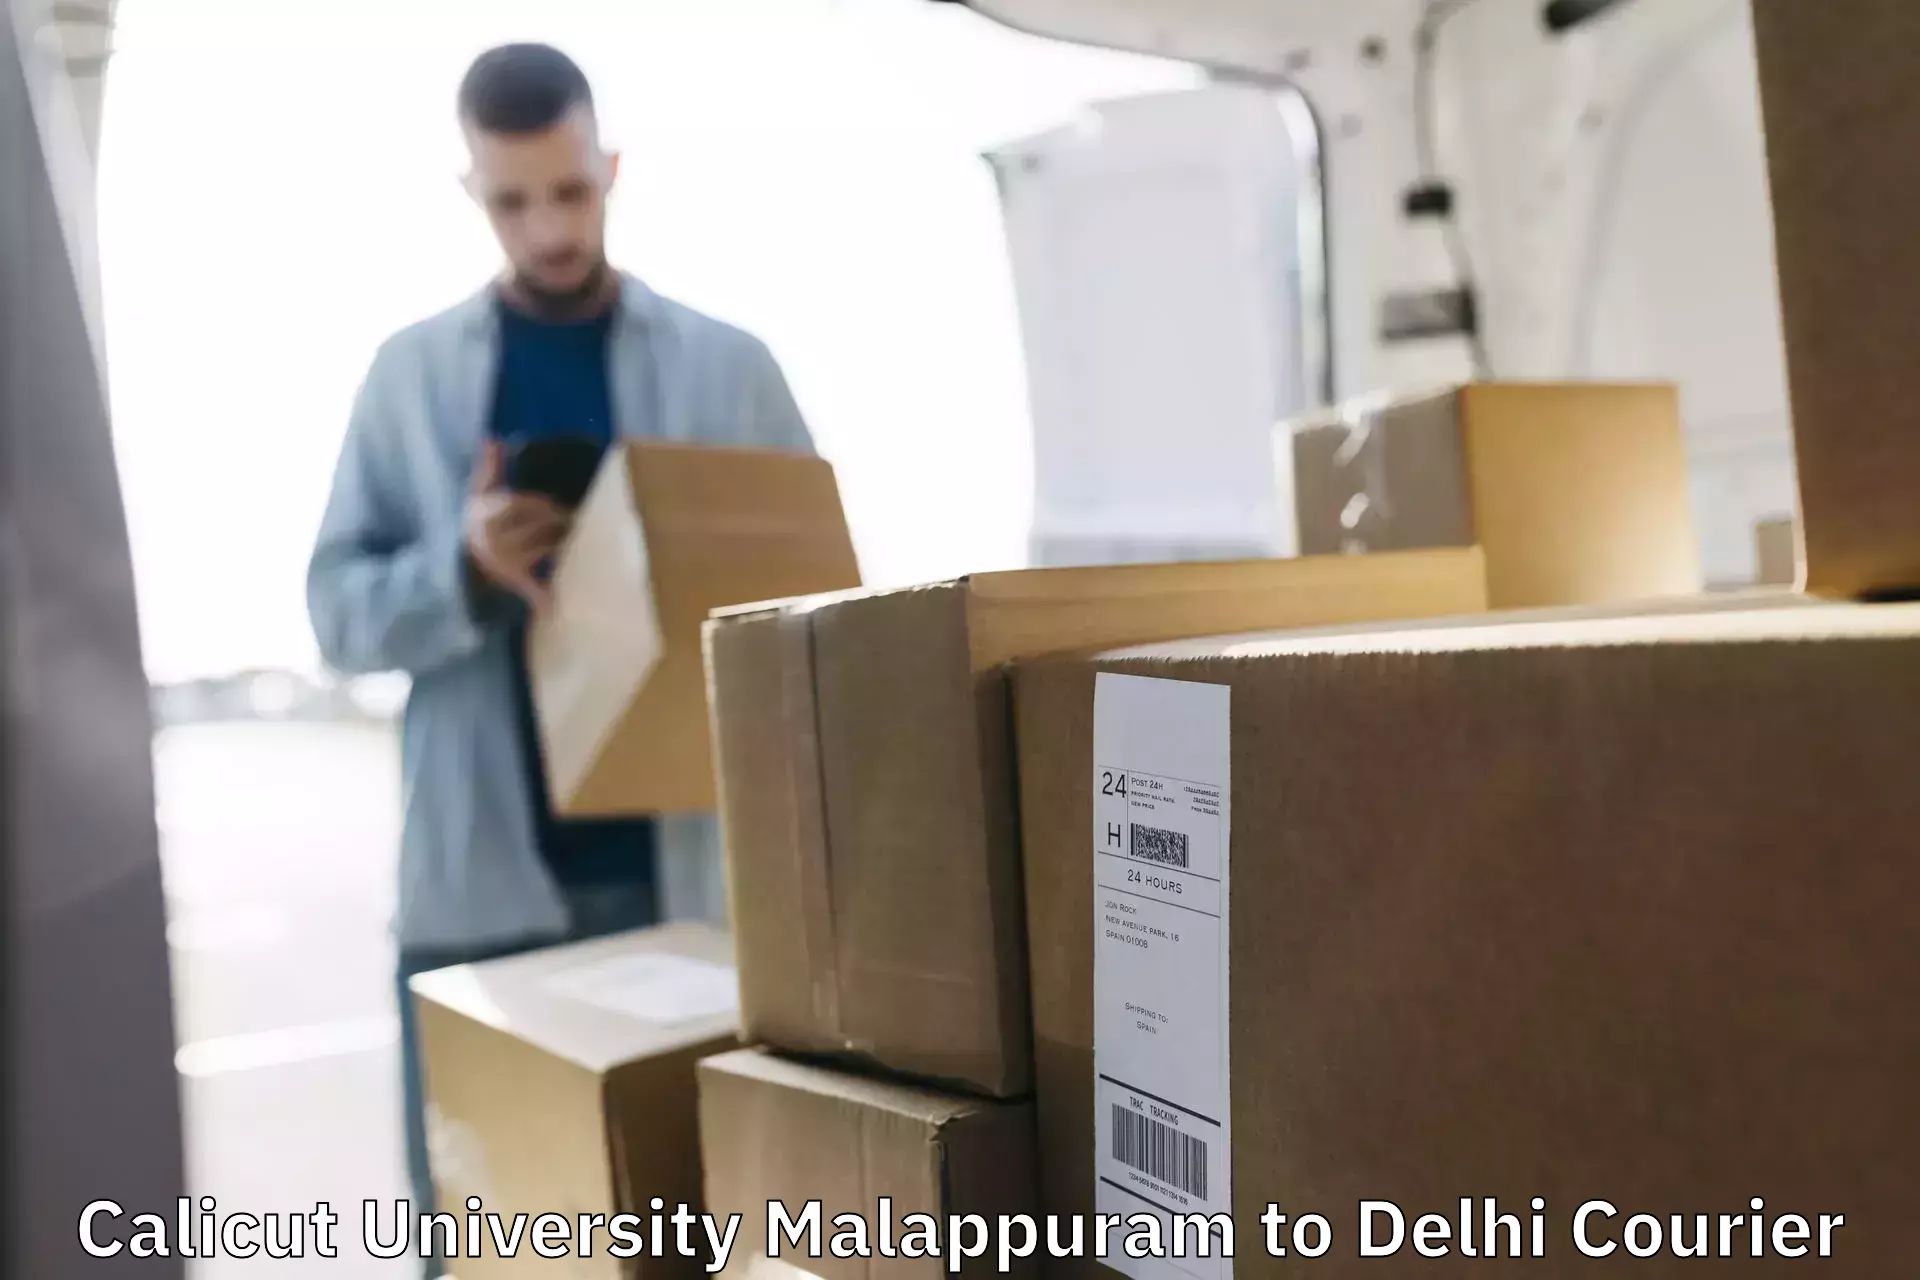 Local delivery service Calicut University Malappuram to Delhi